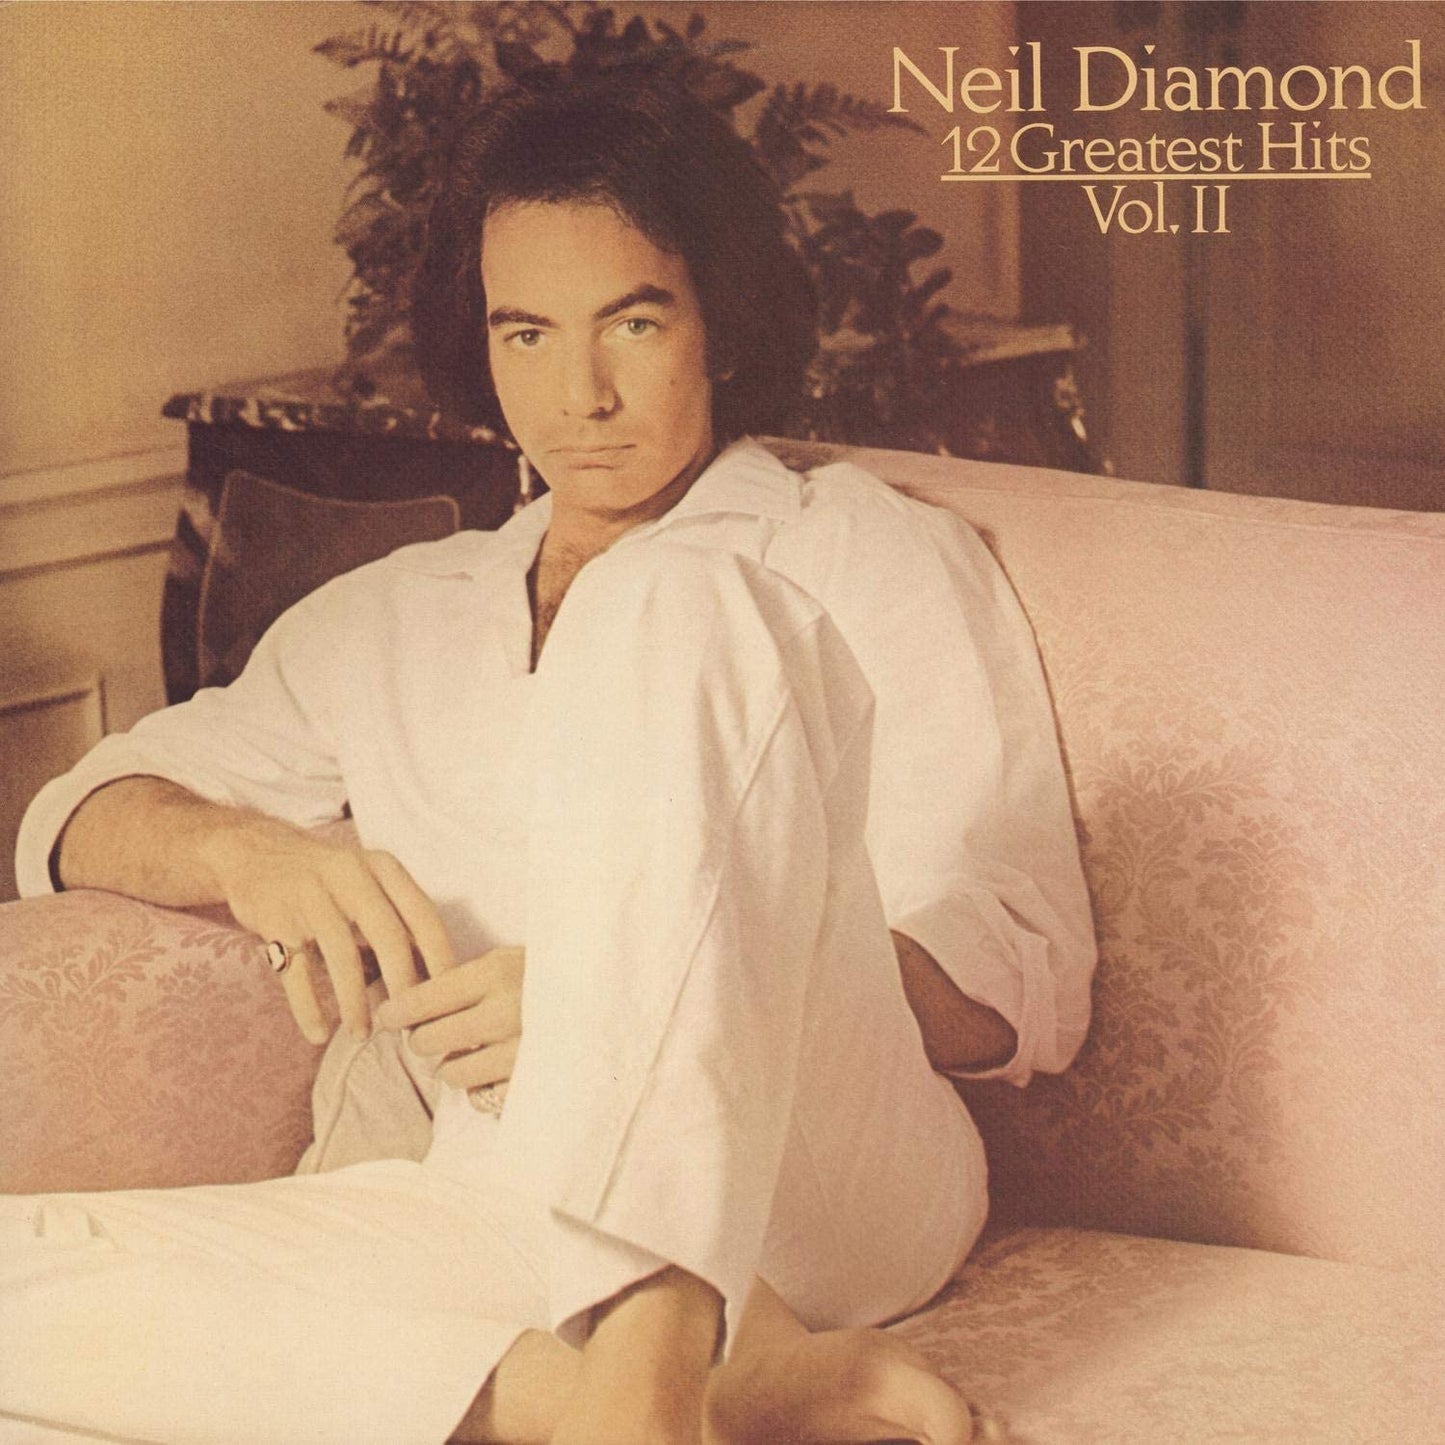 Neil Diamond - 12 Greatest Hits Vol. II - USED CD